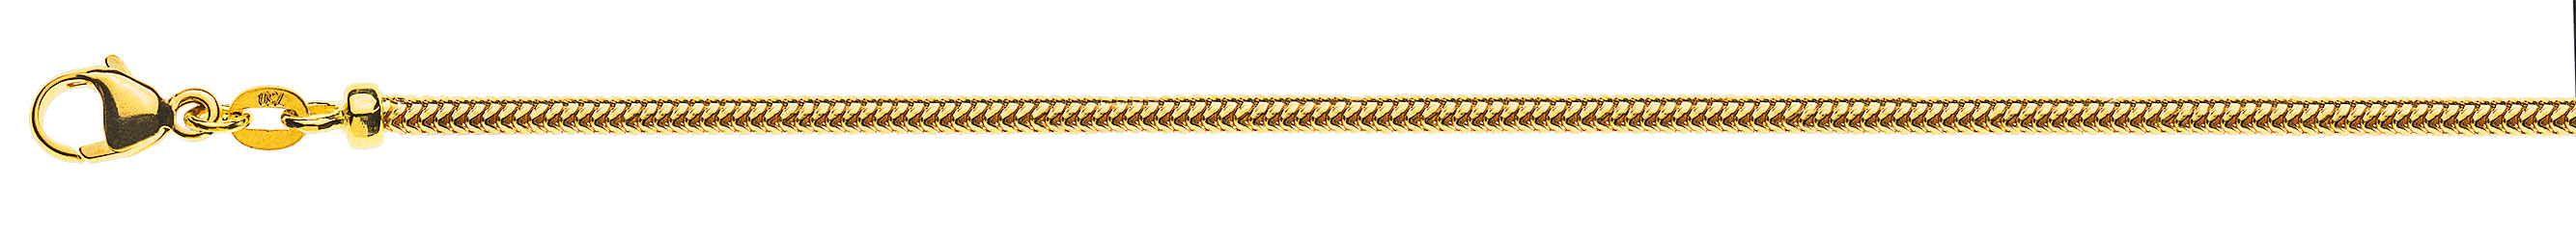 AURONOS Prestige Collier en or jaune 18 carats, chaîne serpent 50cm 2.4mm